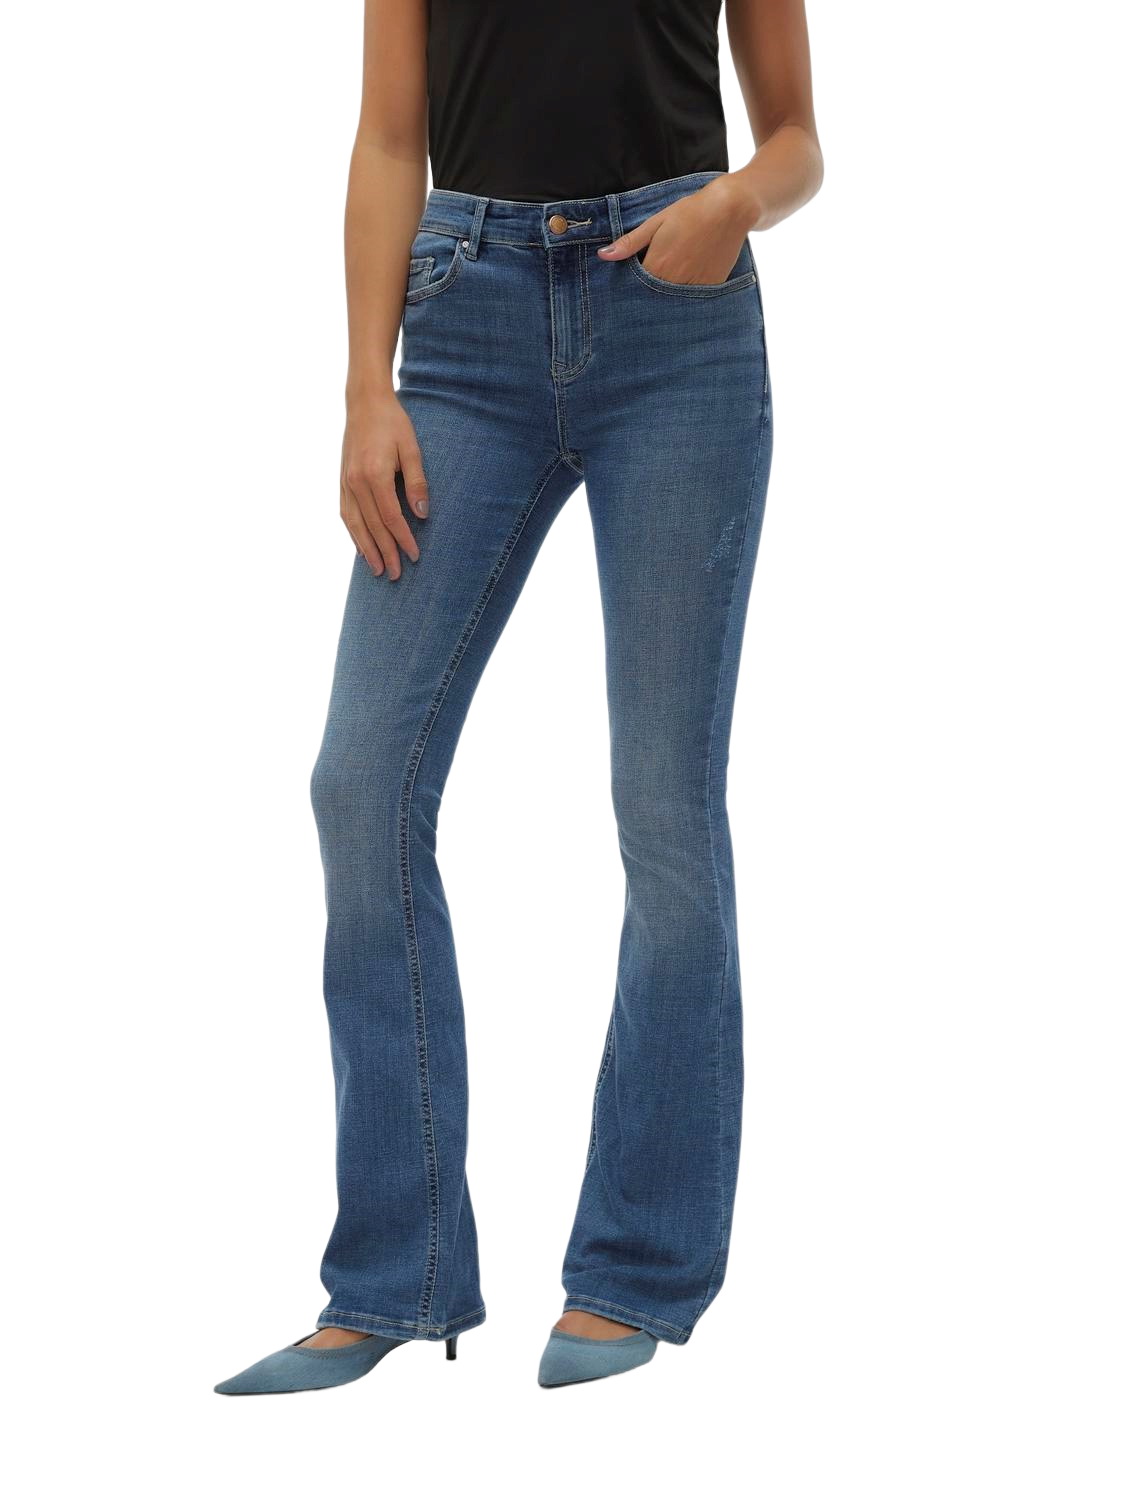 Vero Moda Damen Jeans VMFLASH MR FLARED LI347 GA XS S M L XL Blau - Medium Blue Denim